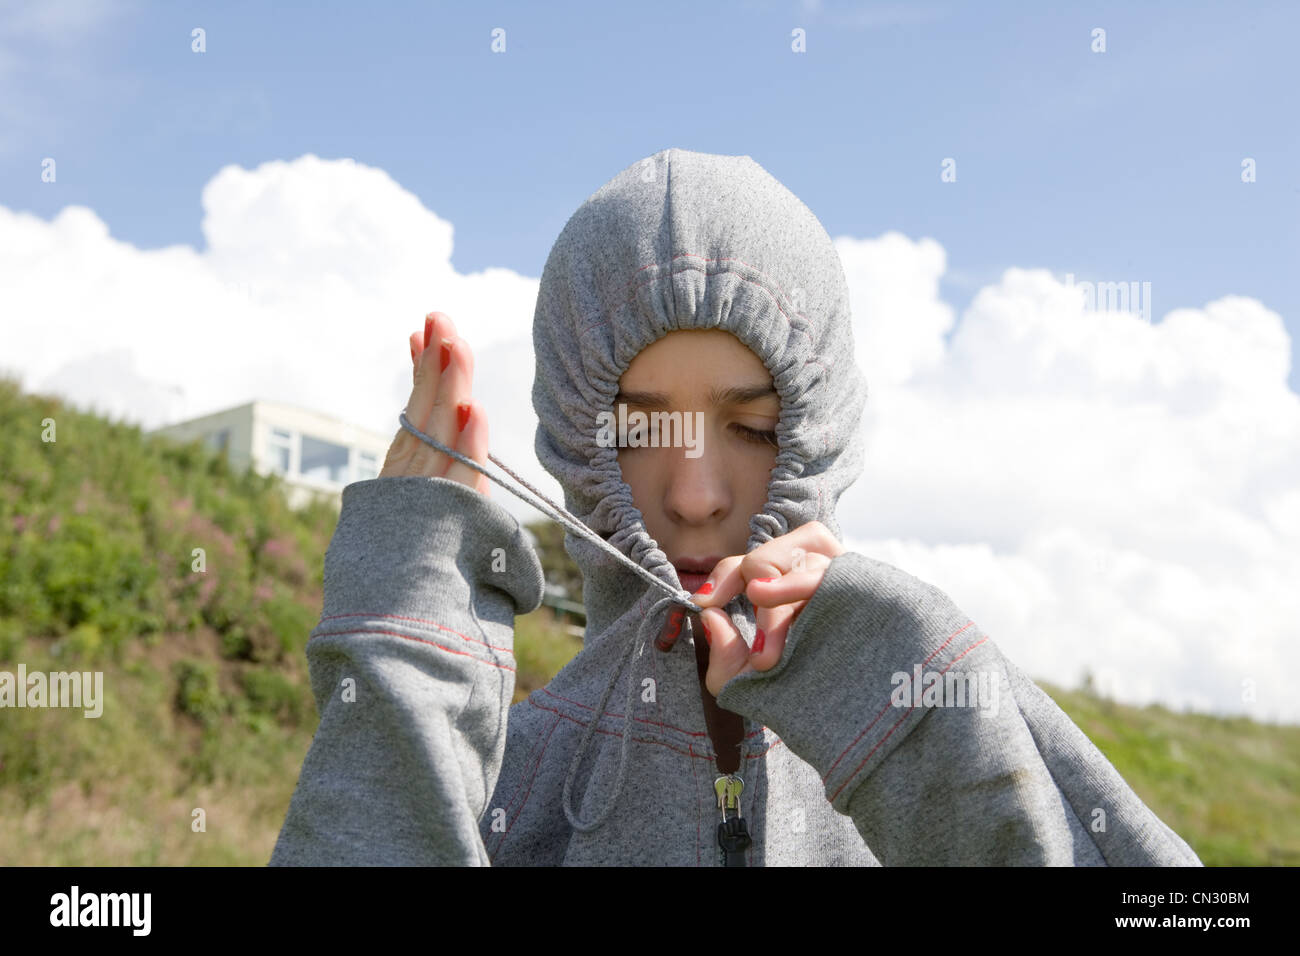 Adolescente vistiendo sudadera con capucha en gris Foto de stock